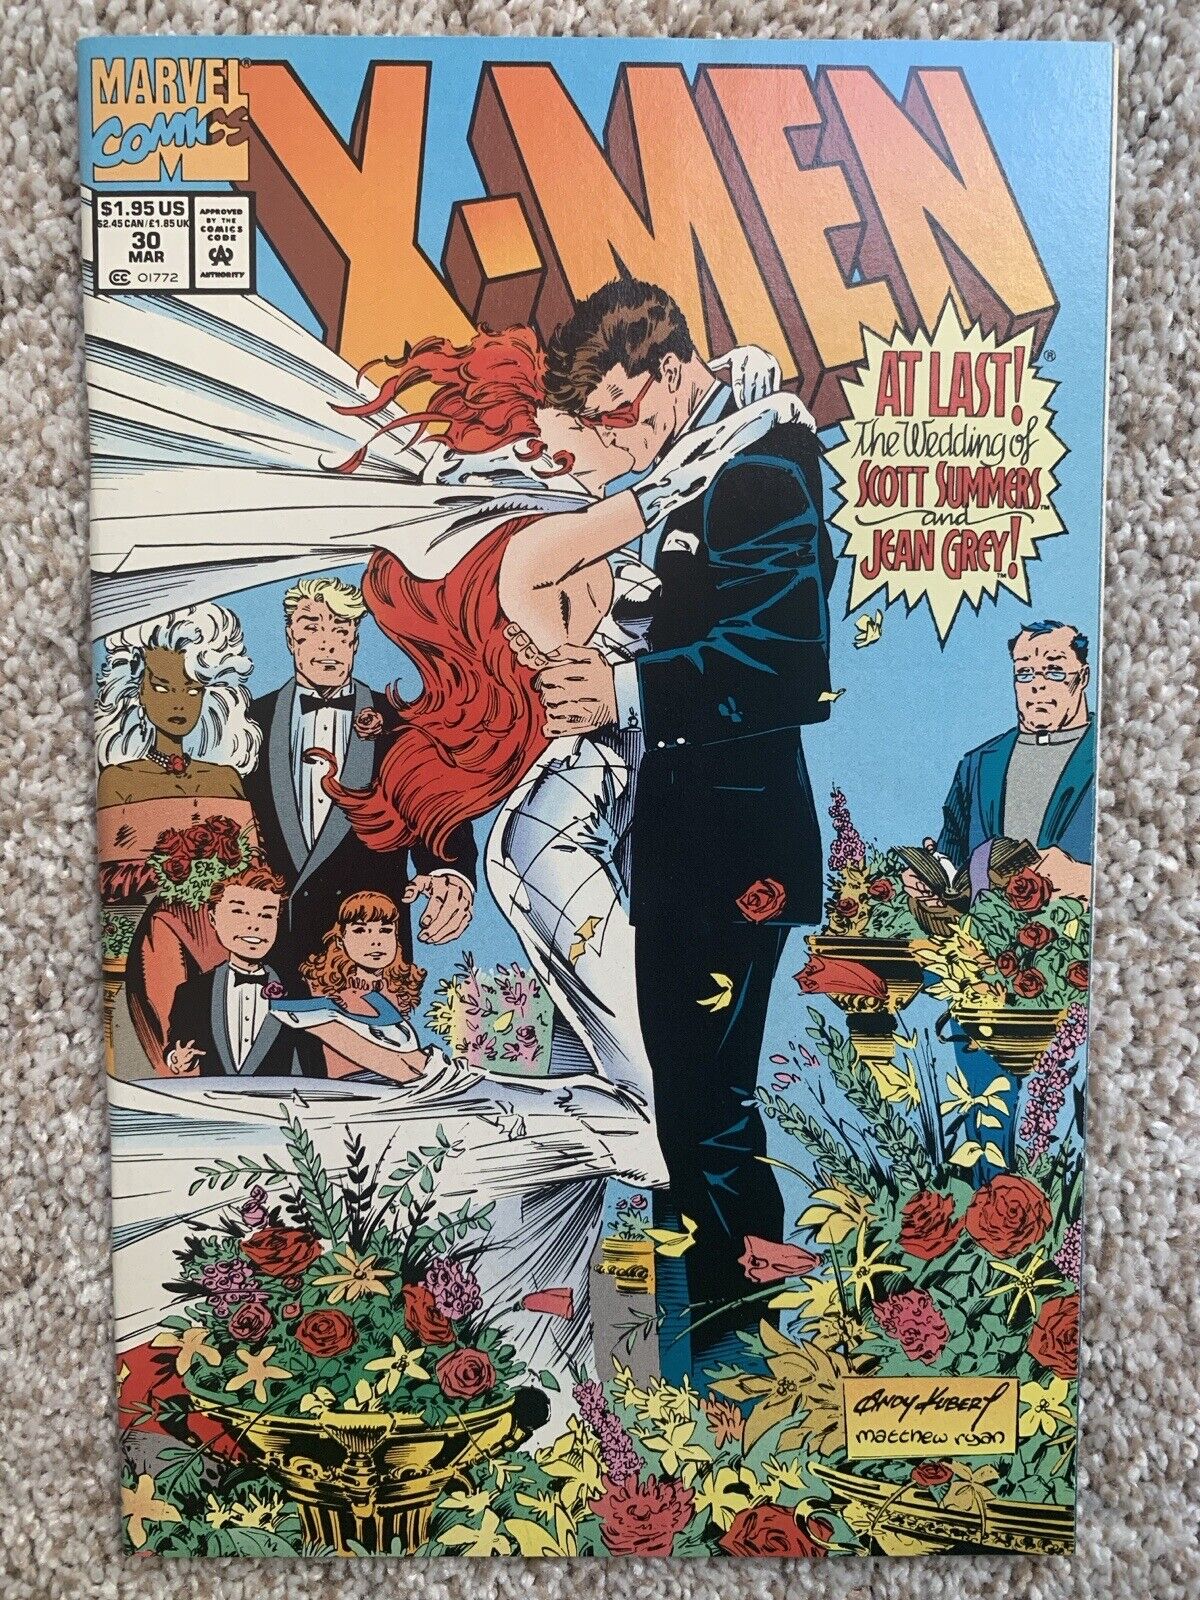 X-Men #30 (1994) Vol. 2 Marvel Wedding of Cyclops and Jean Grey w/ Fleer cards